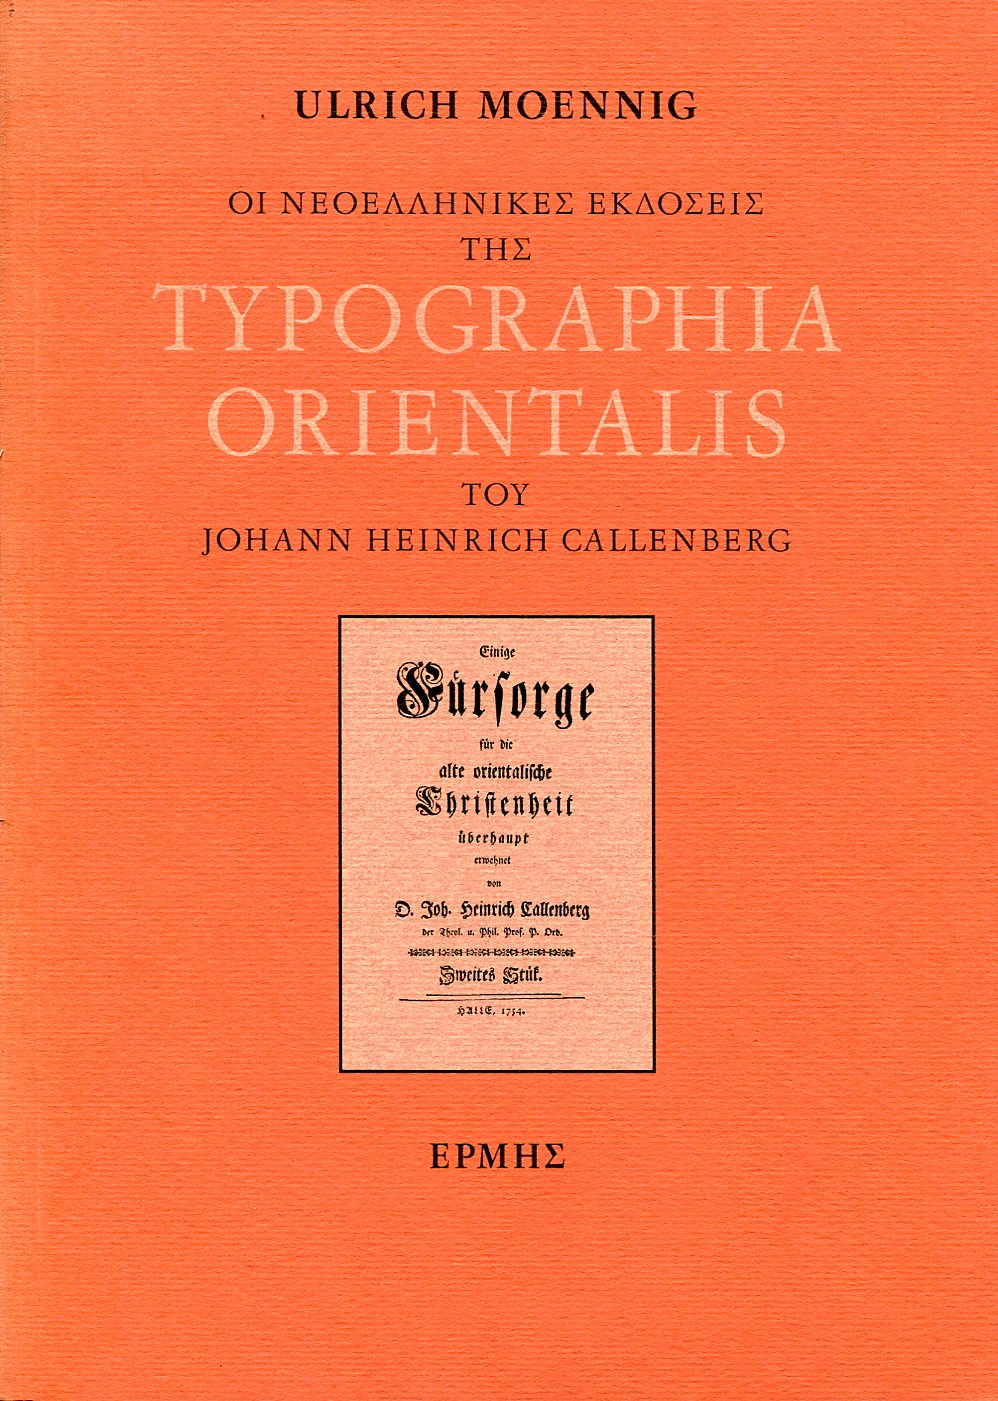 ΟΙ ΝΕΟΕΛΛΗΝΙΚΕΣ ΕΚΔΟΣΕΙΣ ΤΗΣ TYPOGRAPHIA ORIENTALIS ΤΟΥ JOHANN HEINRICH CALLENBERG